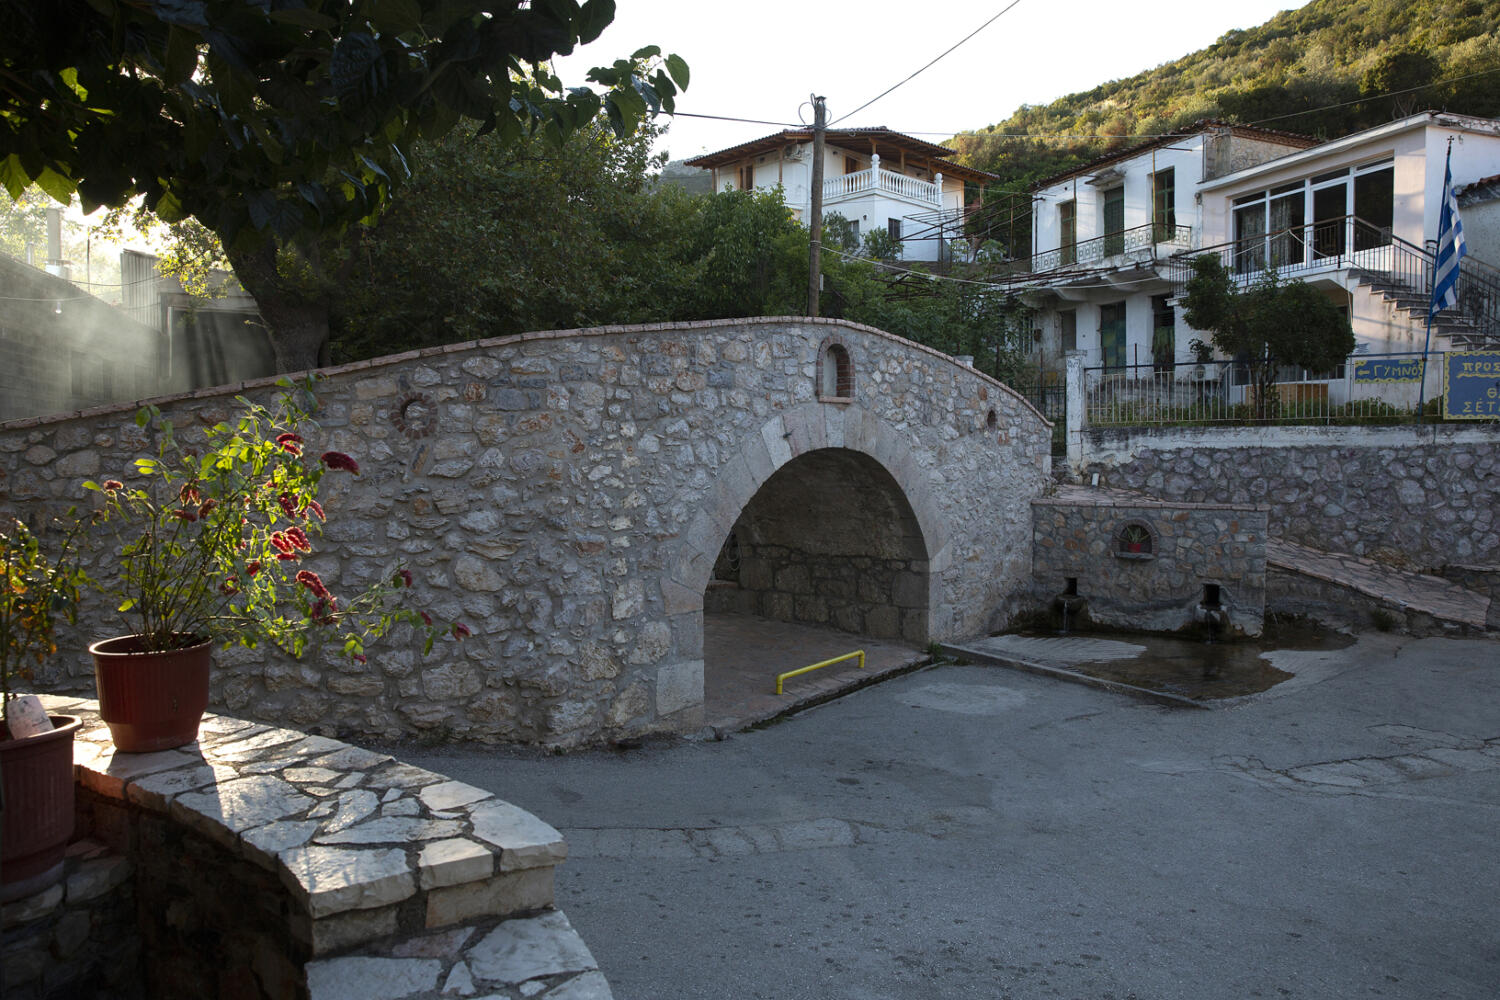 Πέτρινο γεφύρι, χωριό Παρθένι. Φωτογραφία: ©Βασίλης Συκάς, για τον Δήμο Κύμης-Αλιβερίου